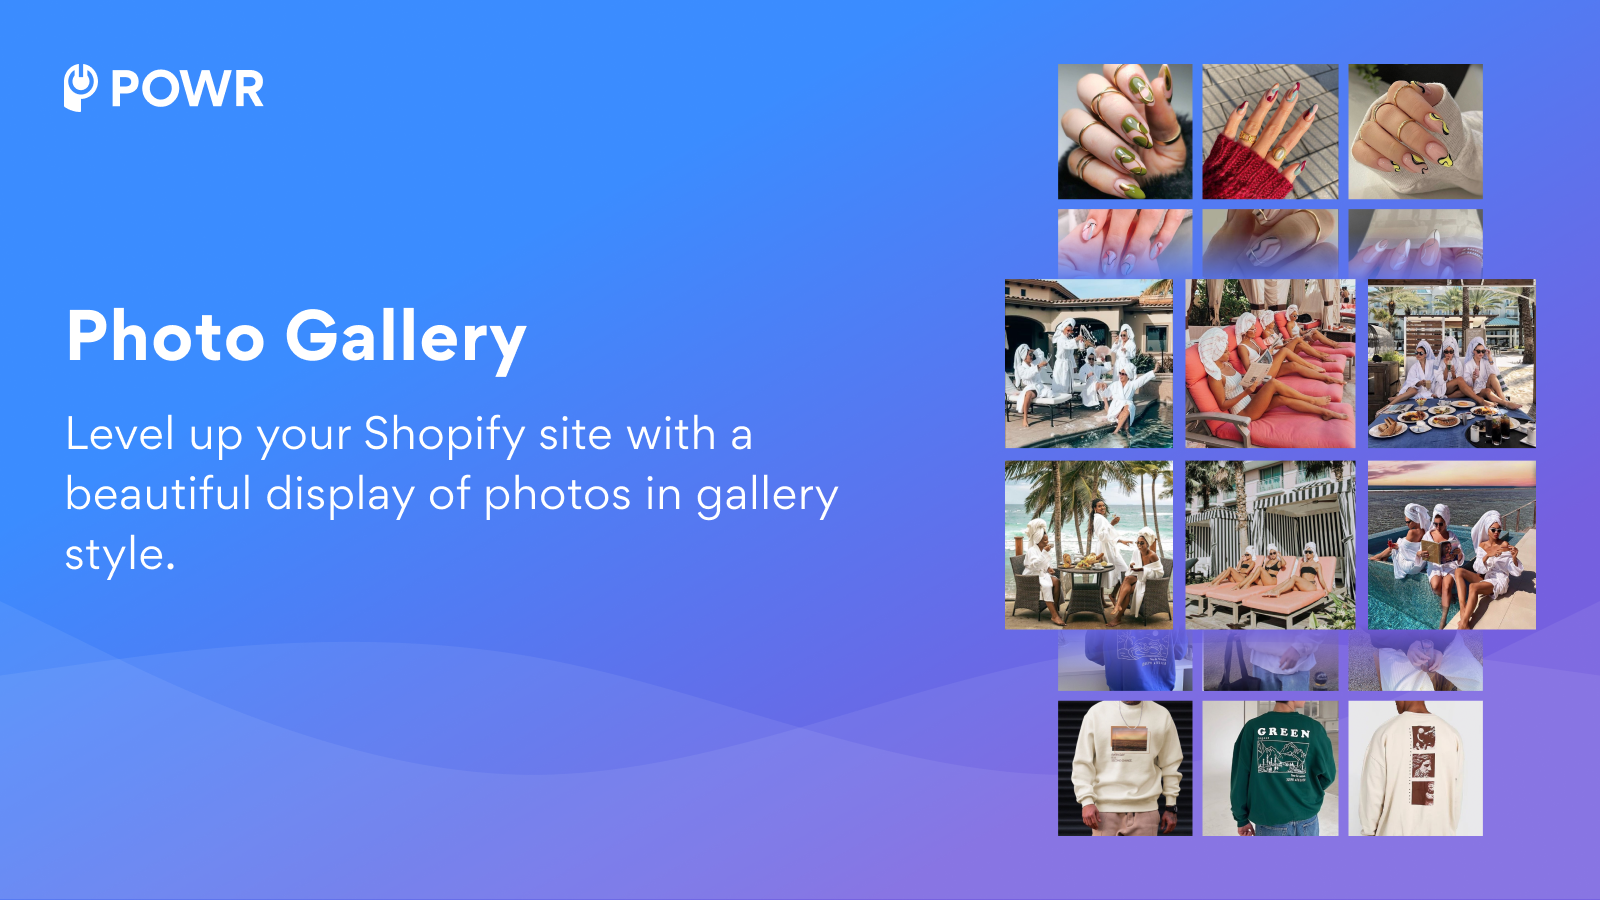 Mejora tu sitio de Shopify con una hermosa exhibición de fotos en